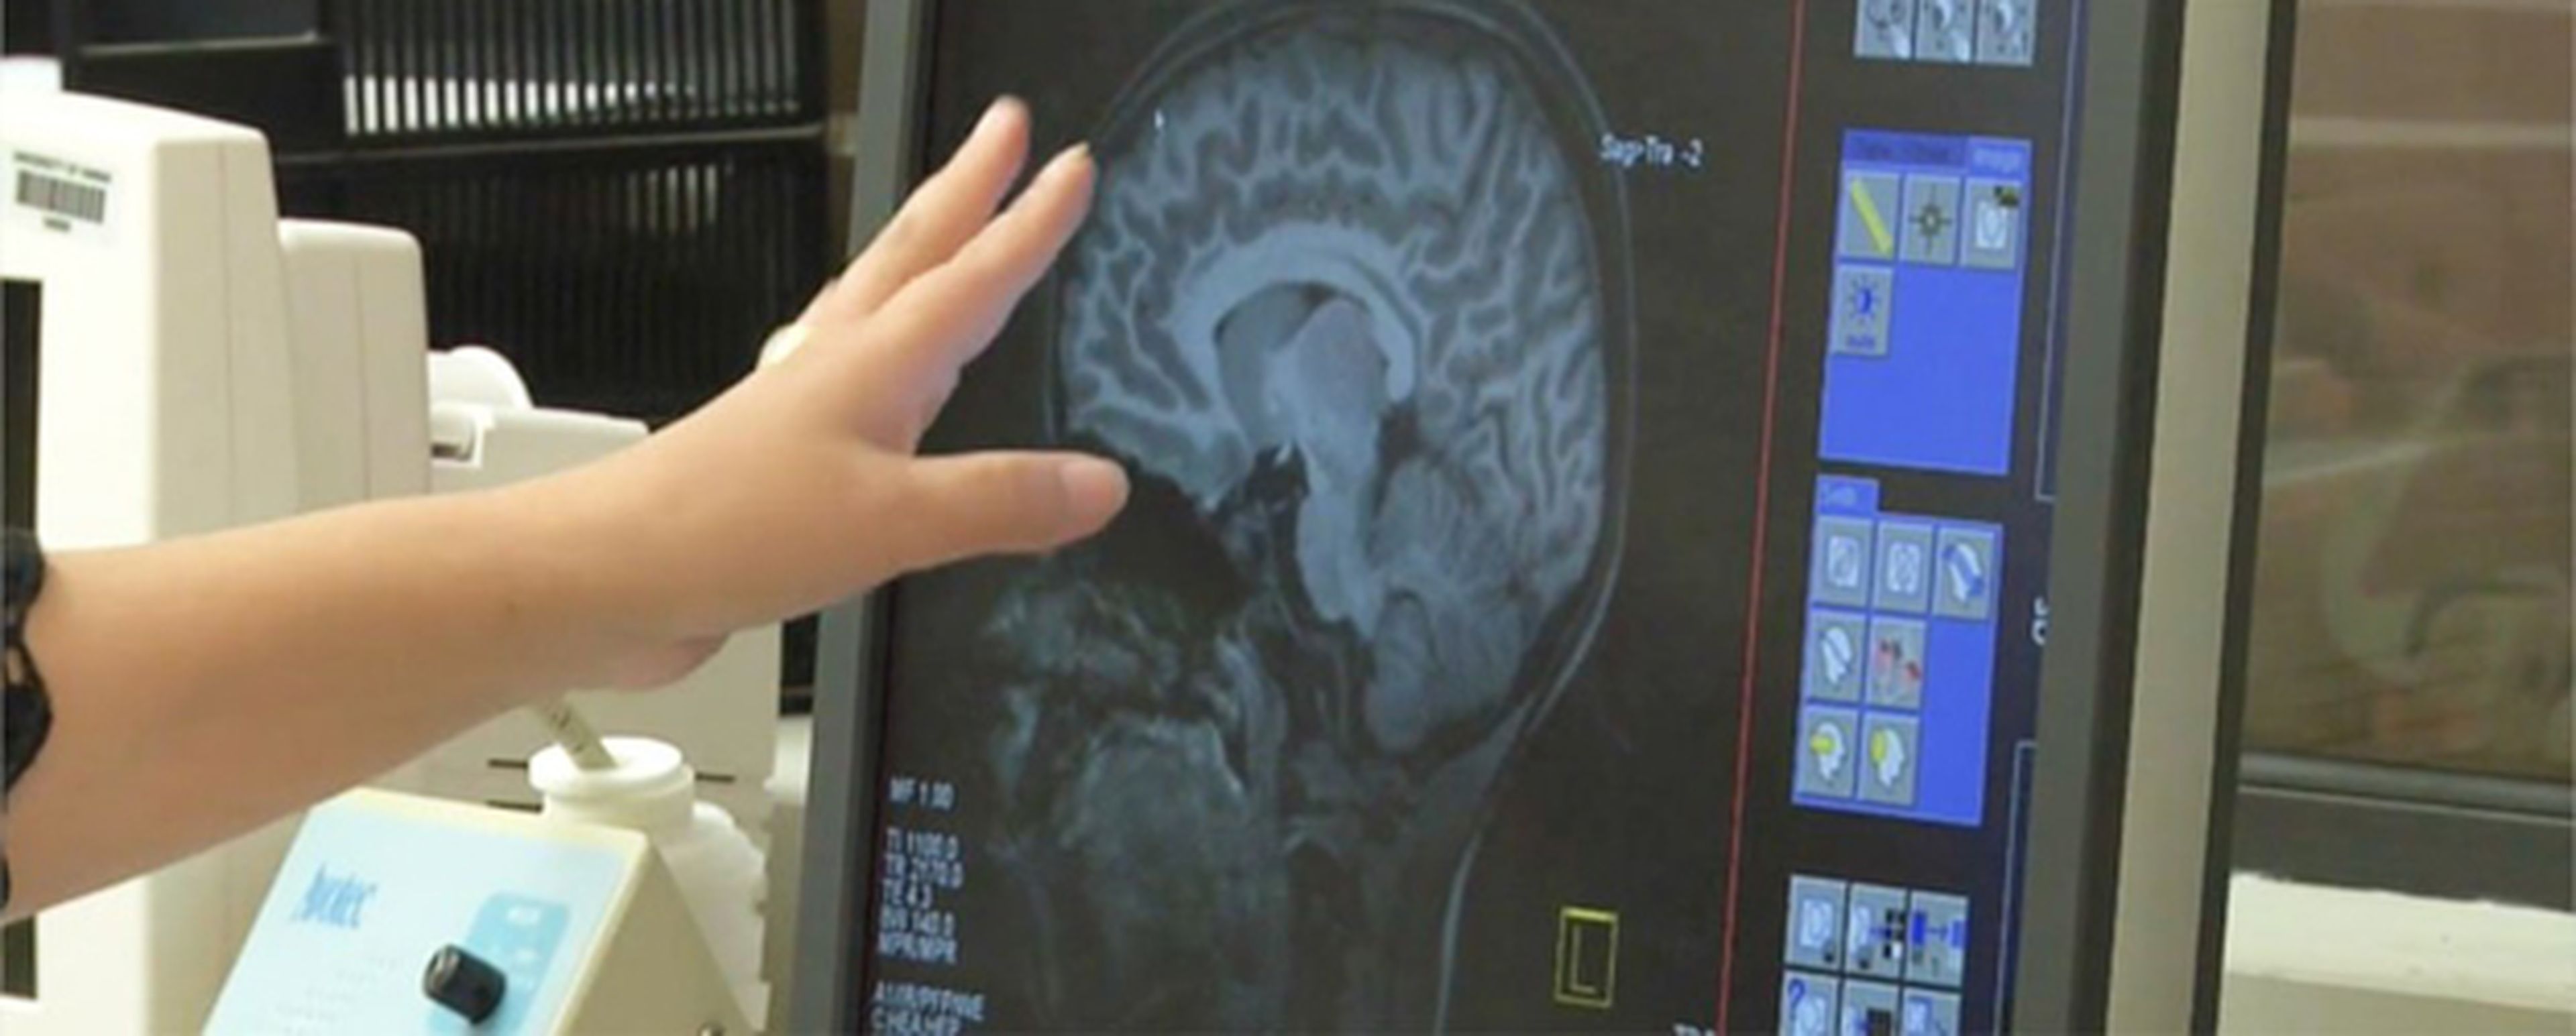 Un estudio descubre síntomas del Alzheimer en la infancia